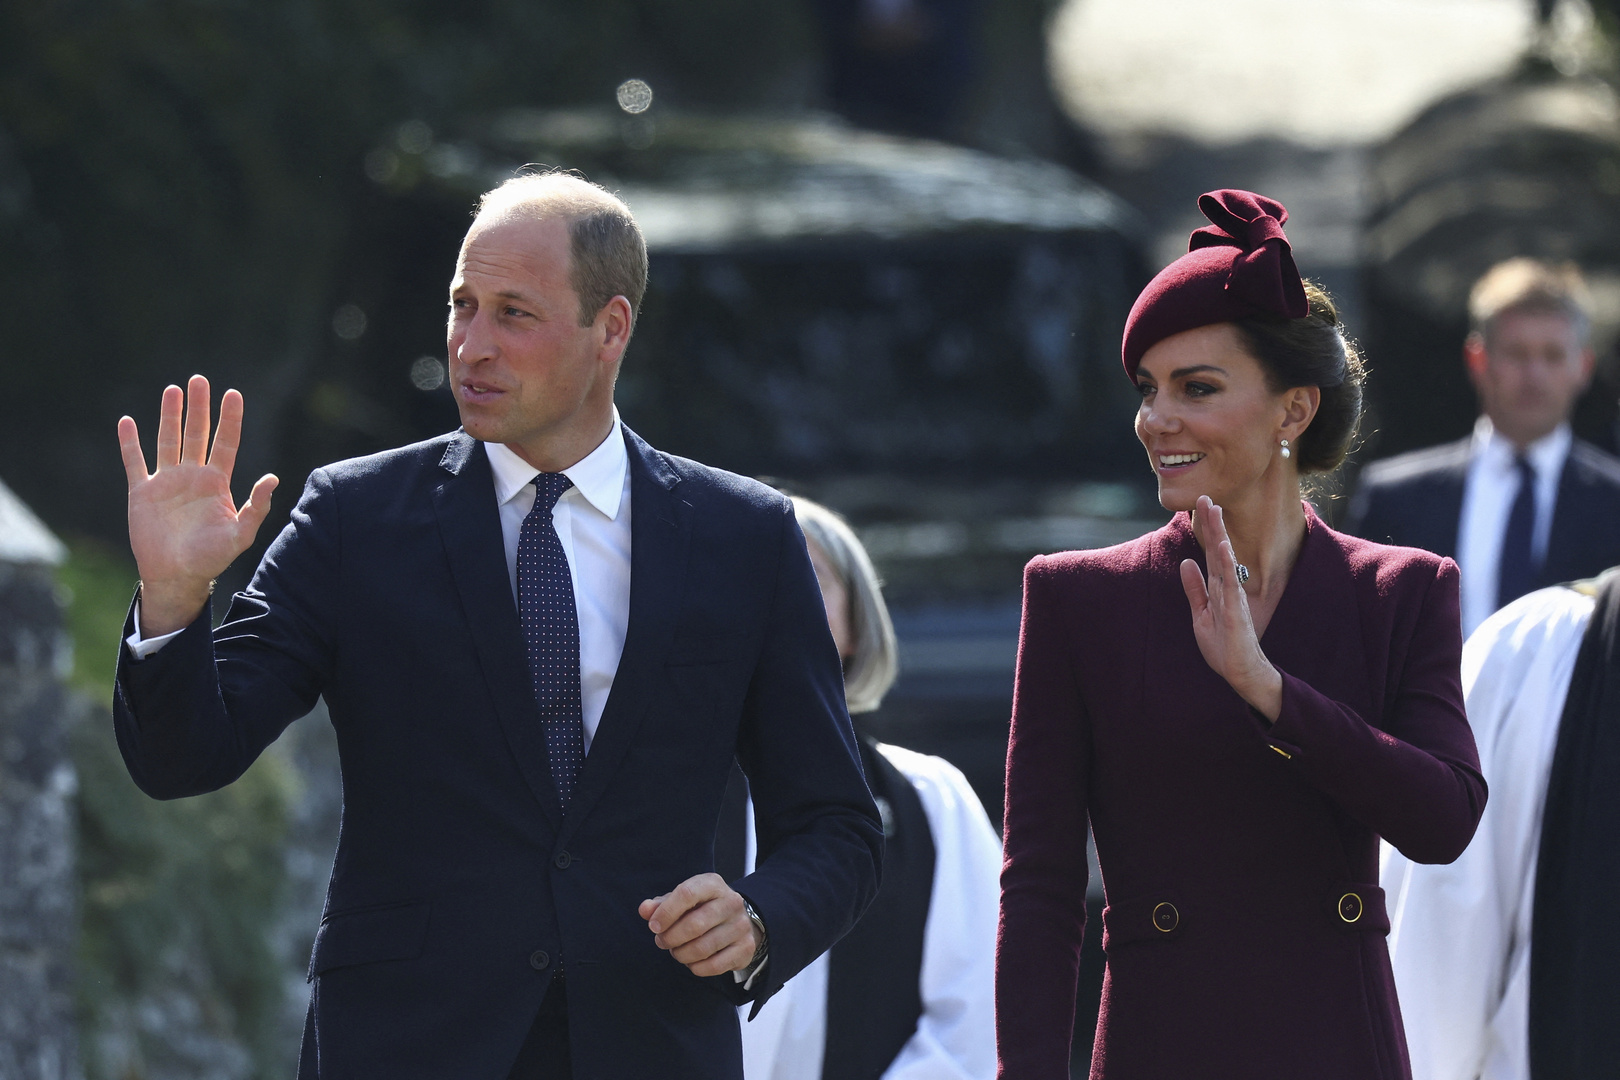 Улыбался и радовался: принц Уильям появился в хорошем настроении на публике после новостей о раке жены